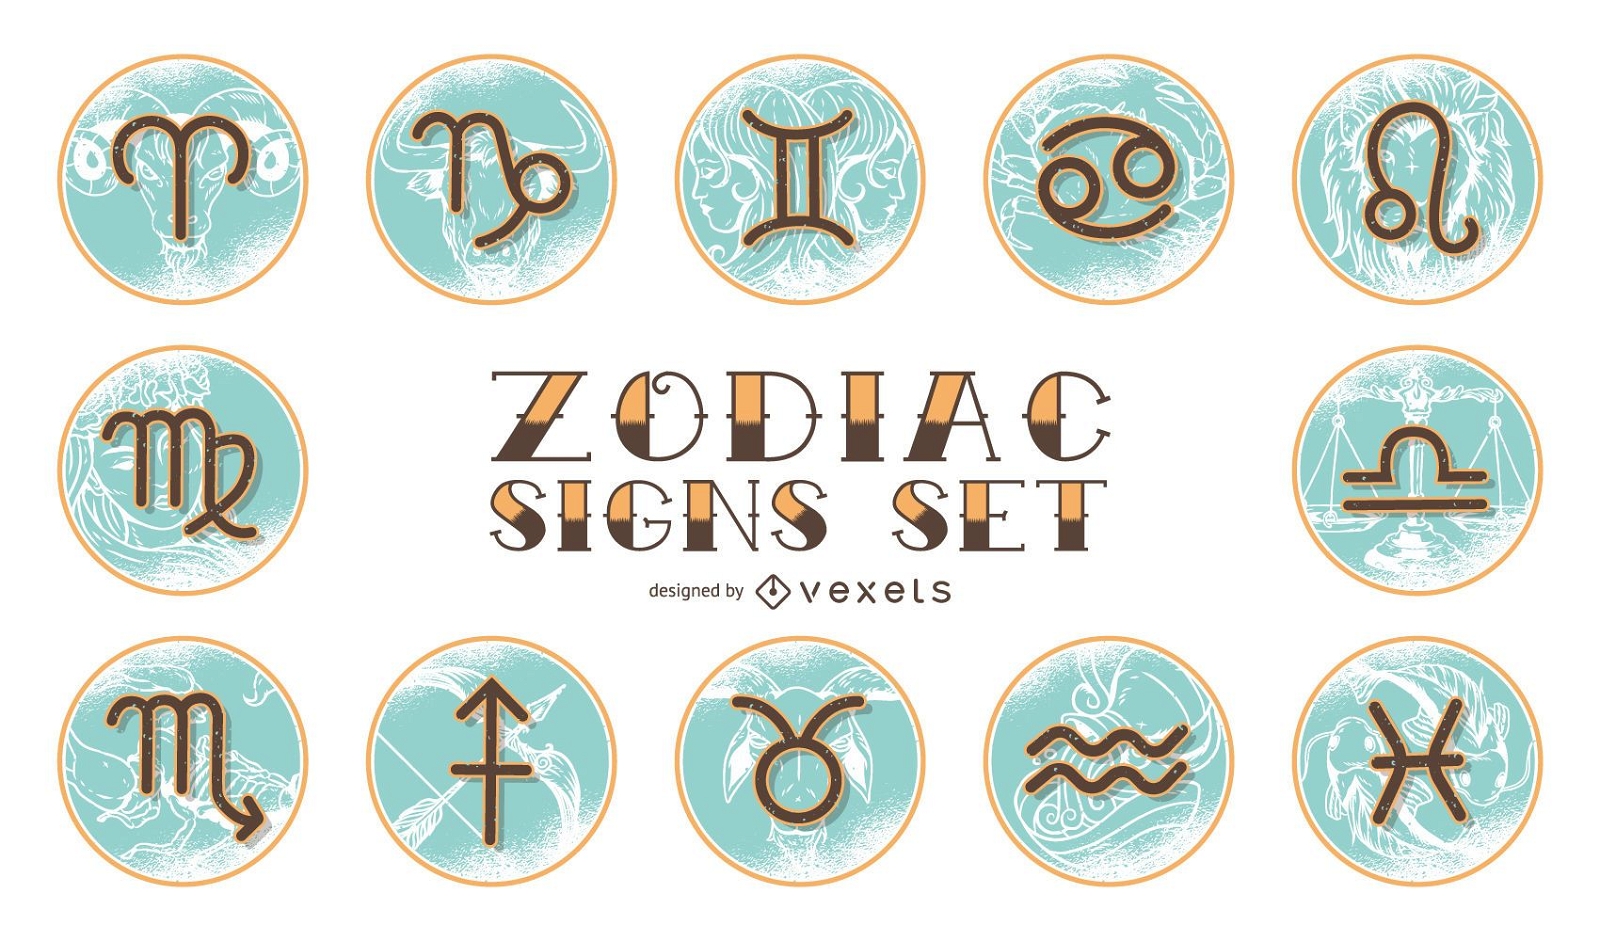 Vintage Horoskop Sternzeichen Set